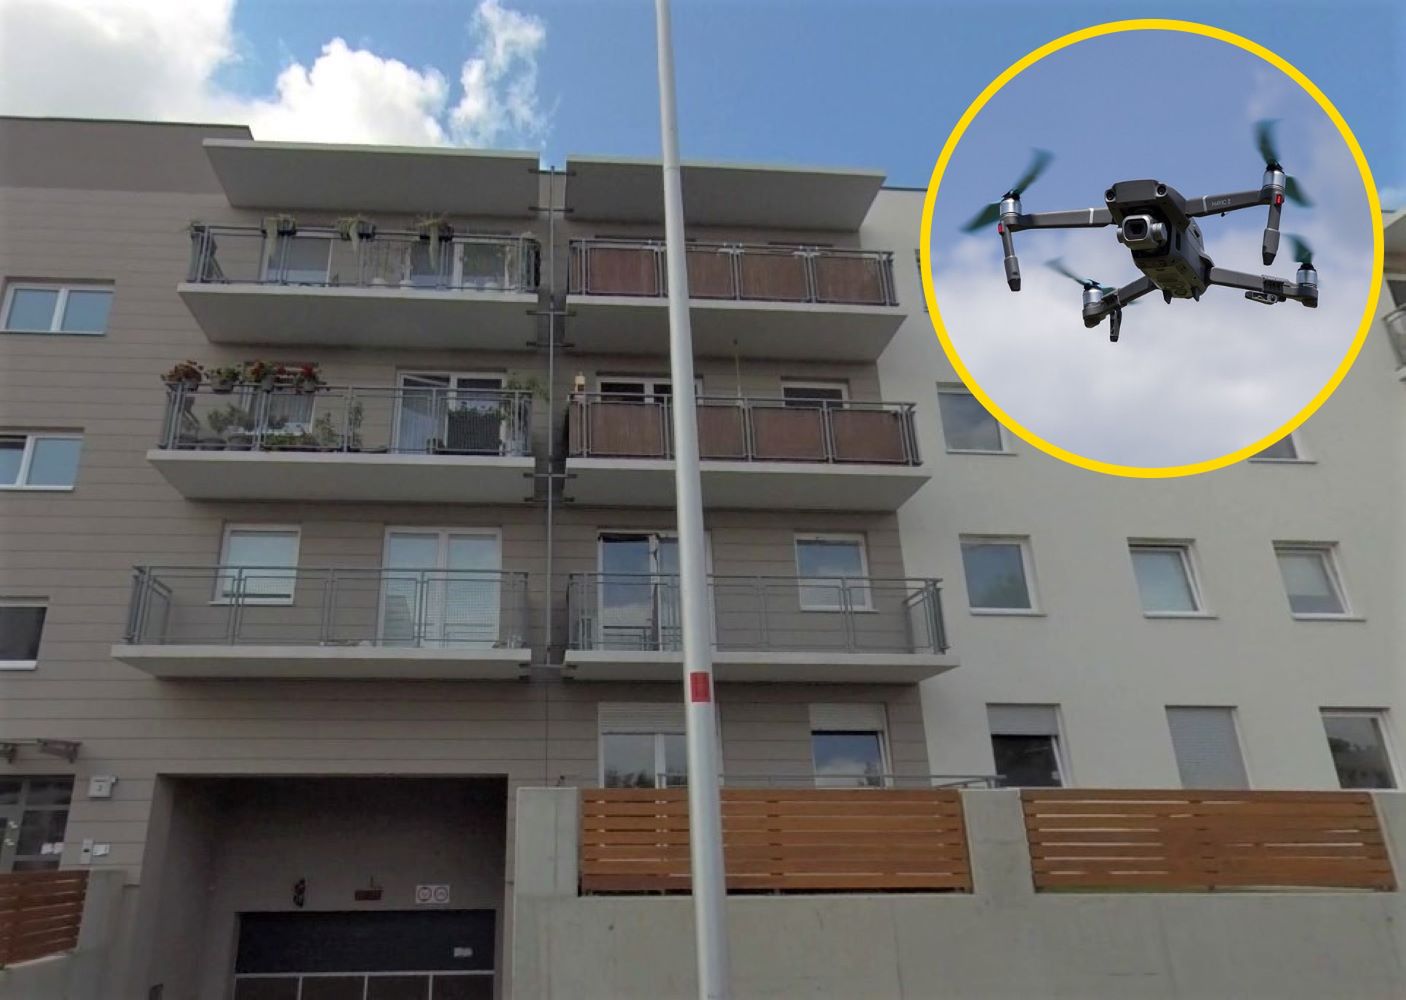 Panika na wrocławskim osiedlu. Przed oknami lata dron. To nowa metoda złodziei?